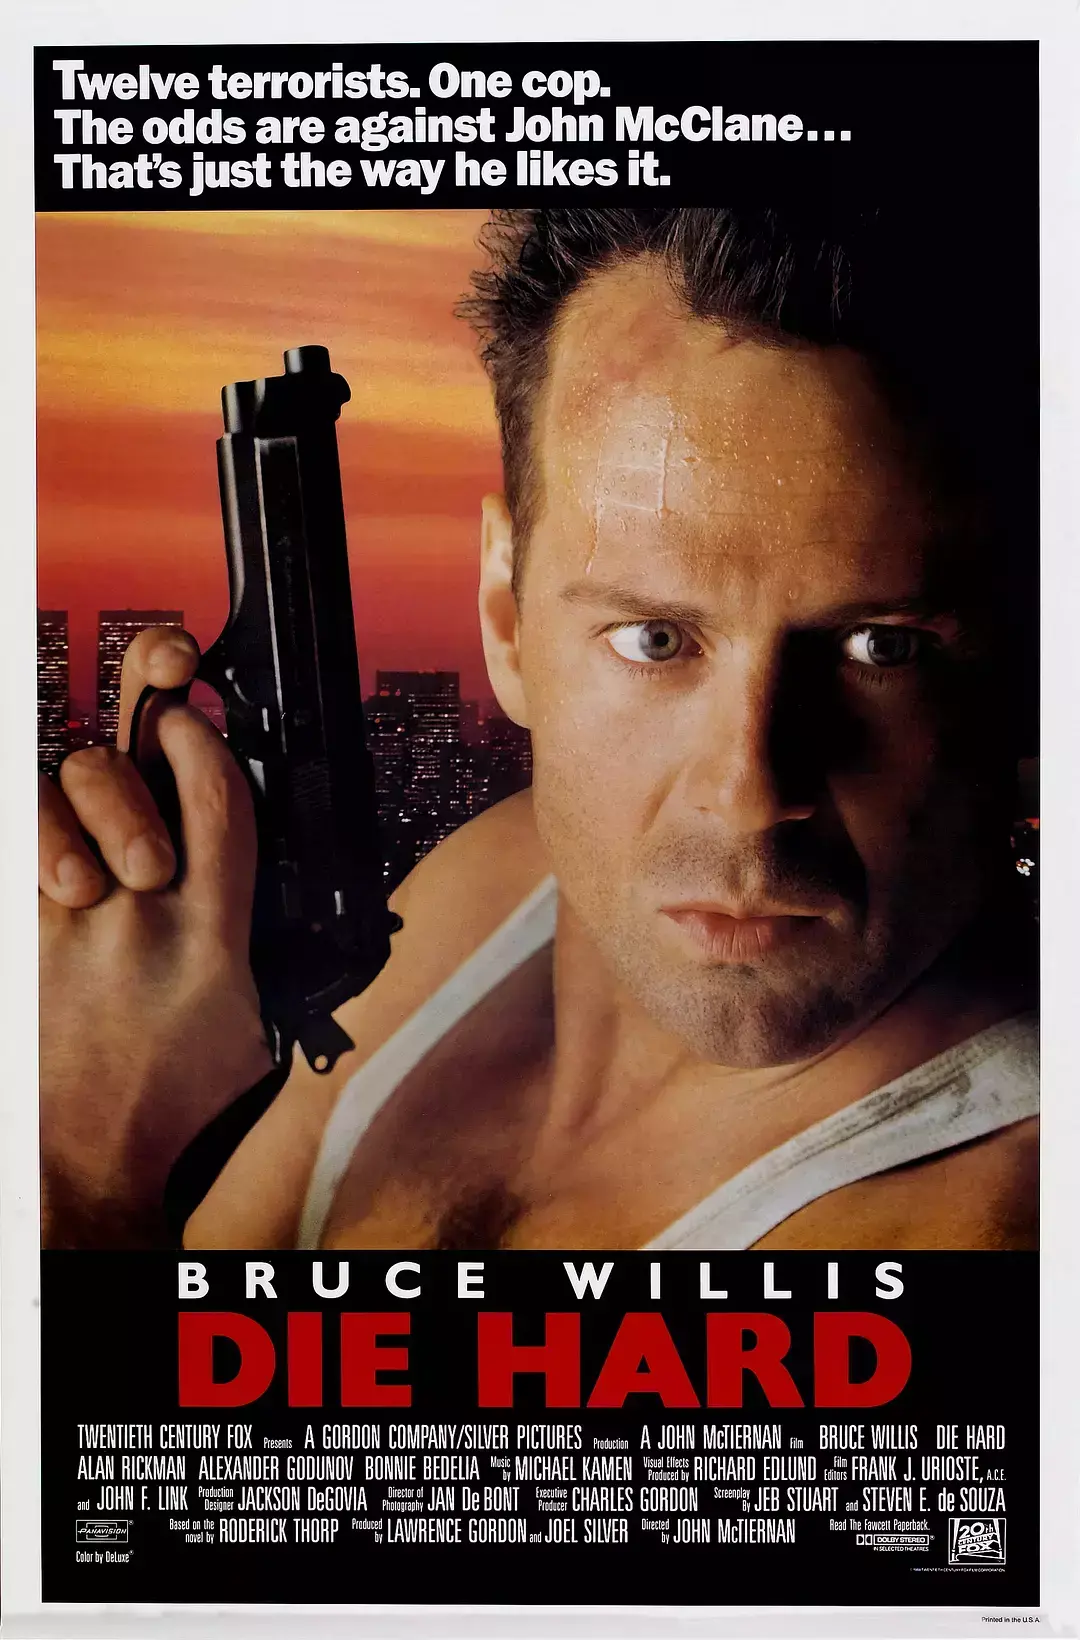 好莱坞巨星布鲁斯・威利斯Bruce Willis经典影视剧照壁纸下载-欧莱凯设计网